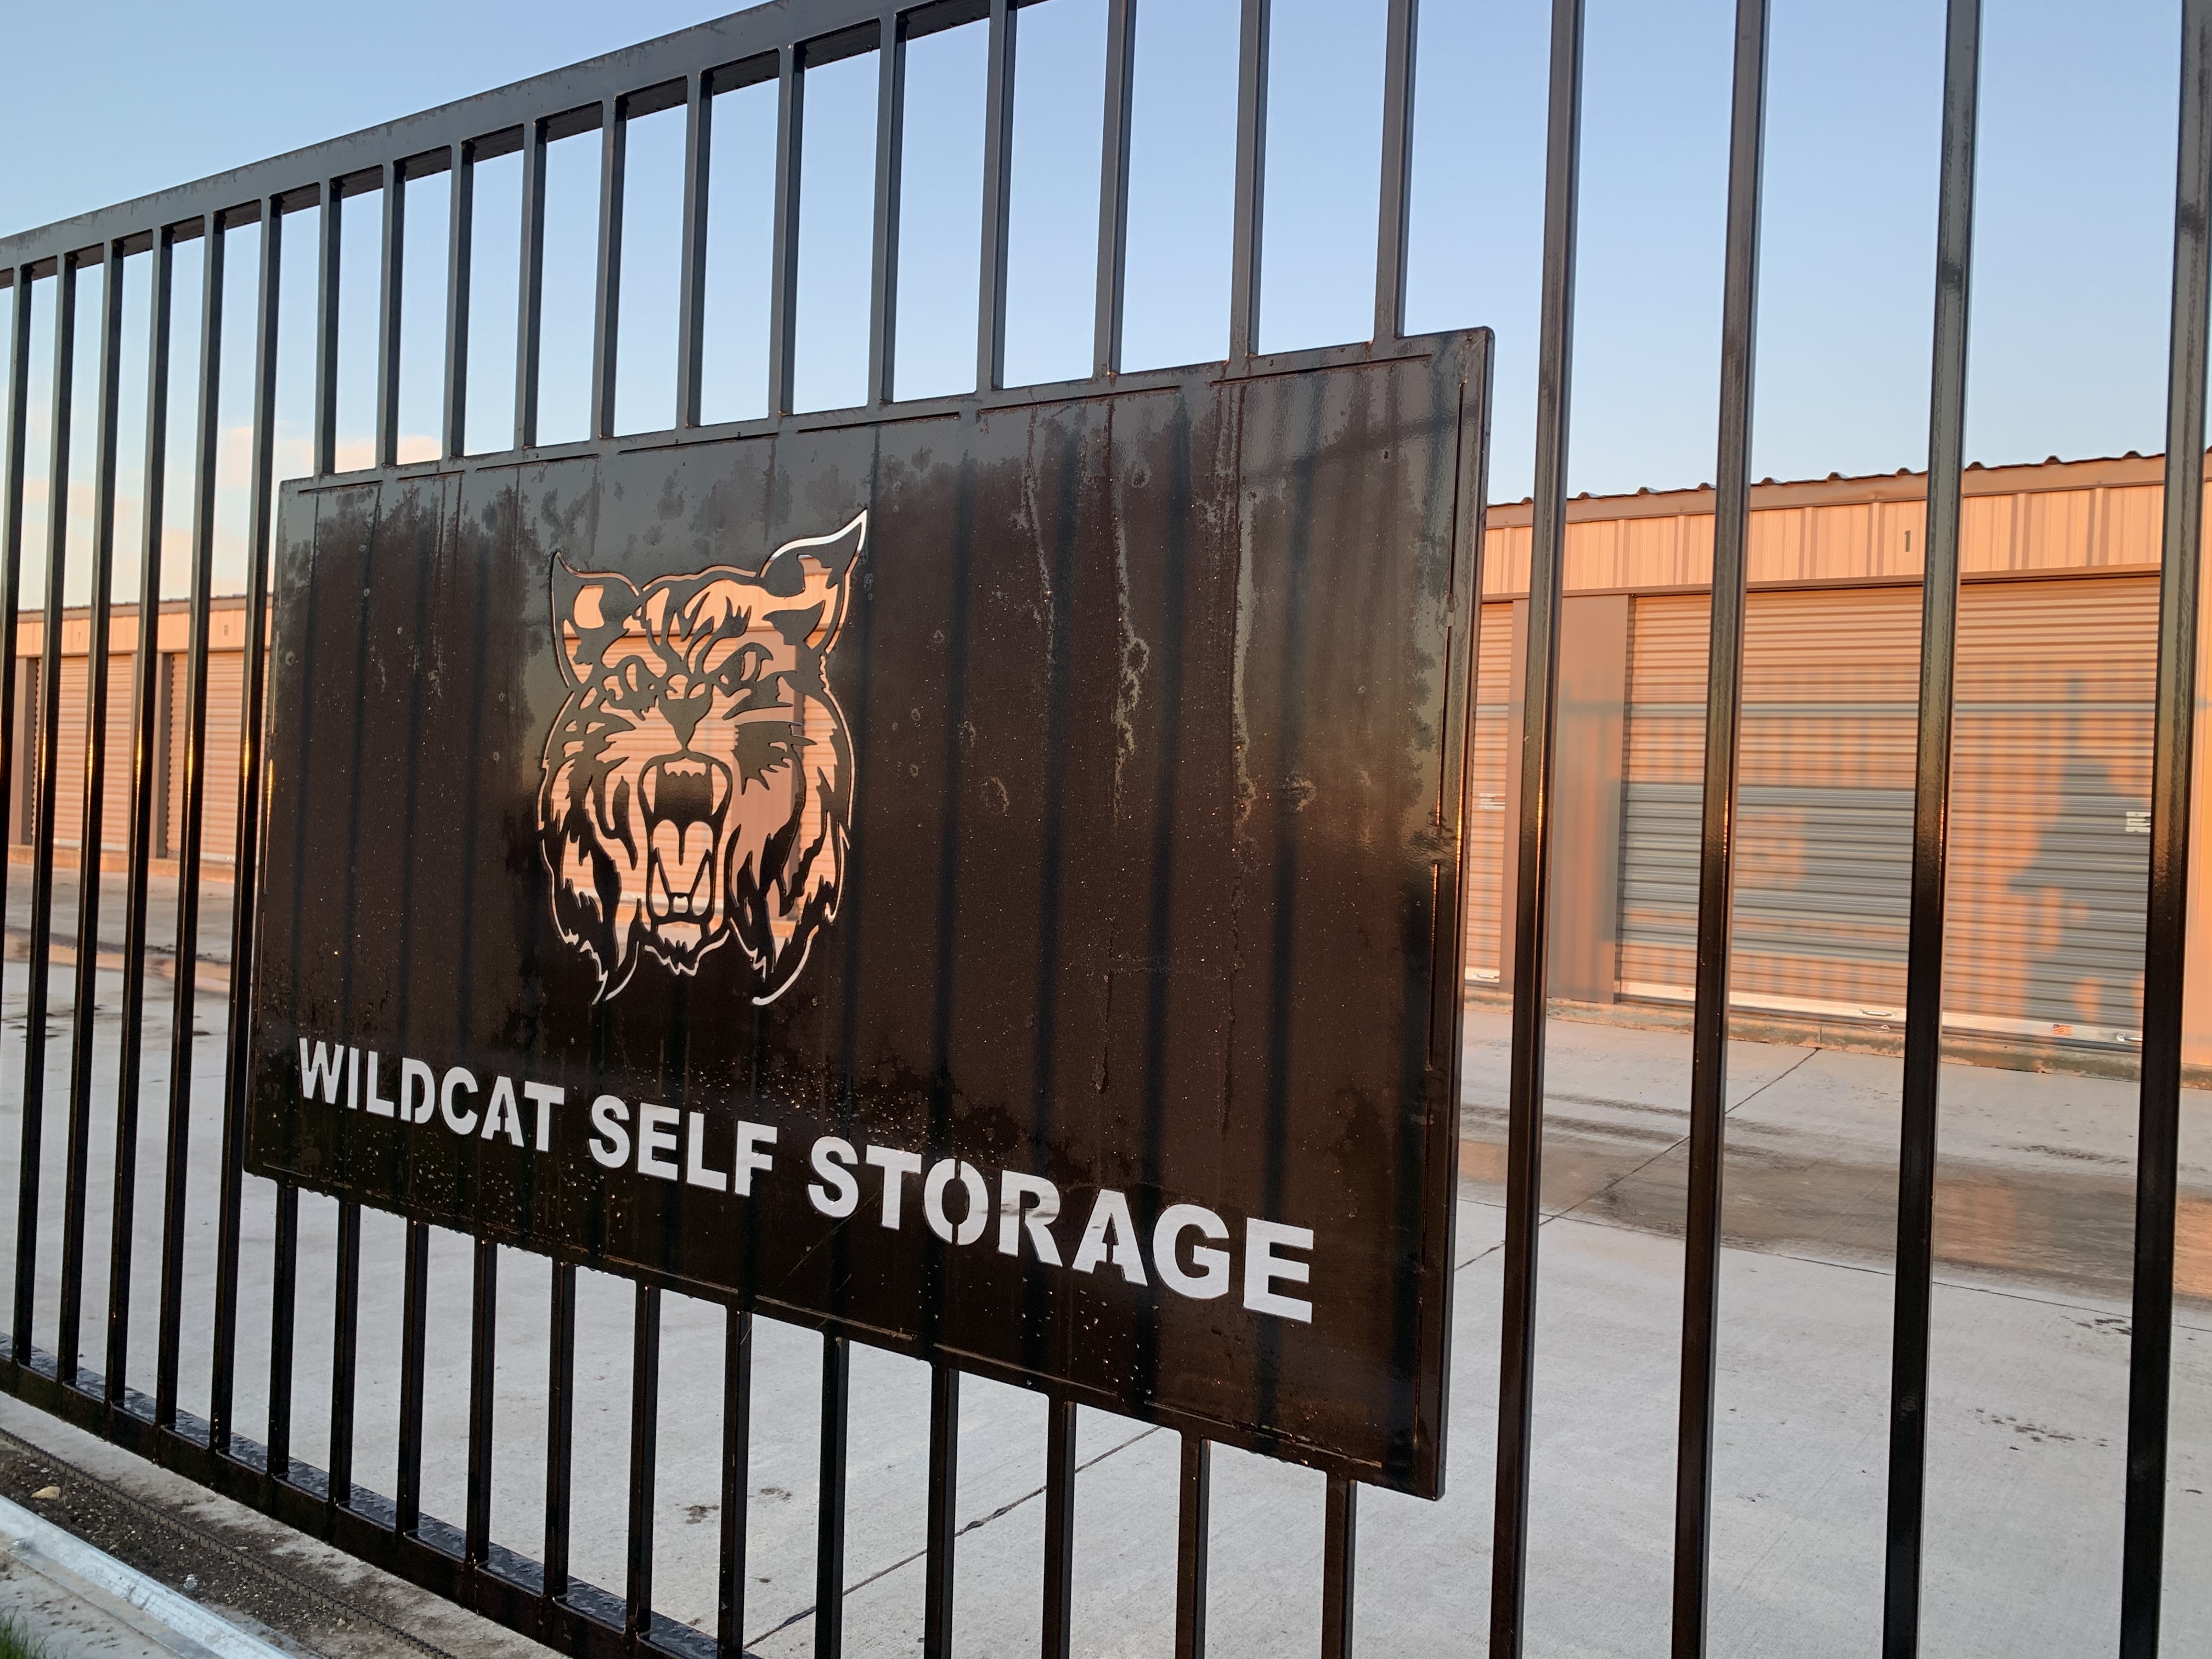 Godley Wildcat Storage in Godley, TX